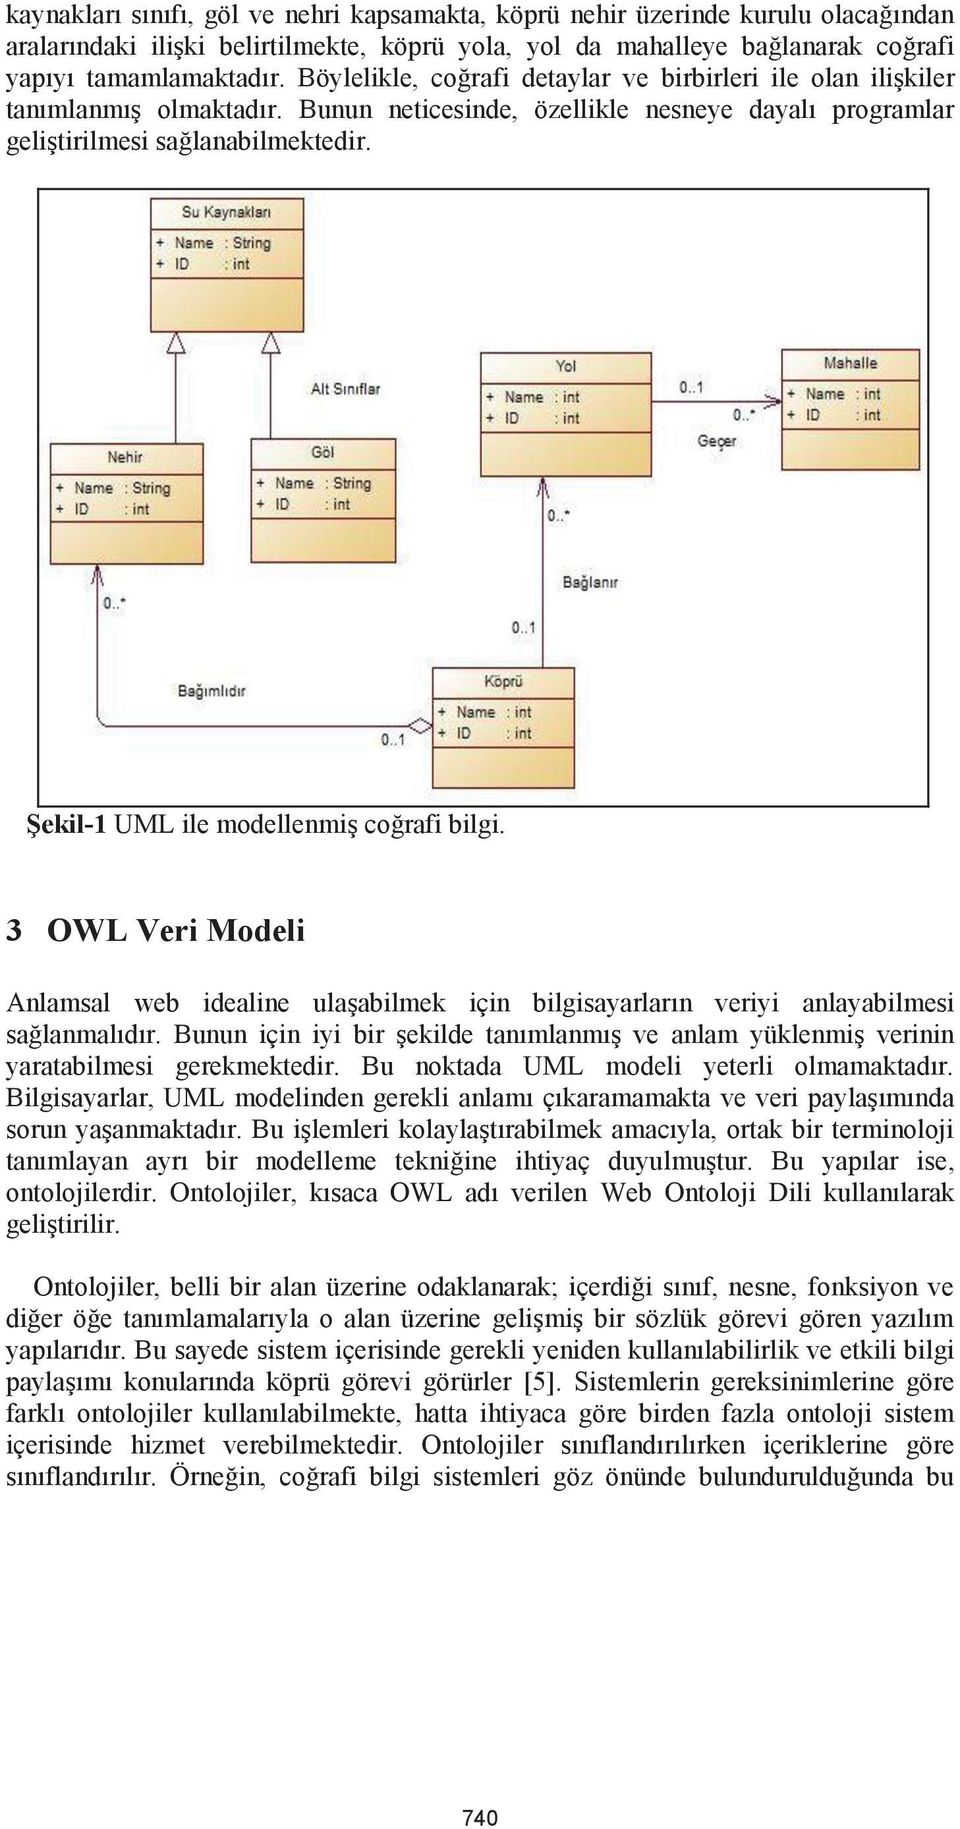 Şekil-1 UML ile modellenmiş coğrafi bilgi. 3 OWL Veri Modeli Anlamsal web idealine ulaşabilmek için bilgisayarların veriyi anlayabilmesi sağlanmalıdır.